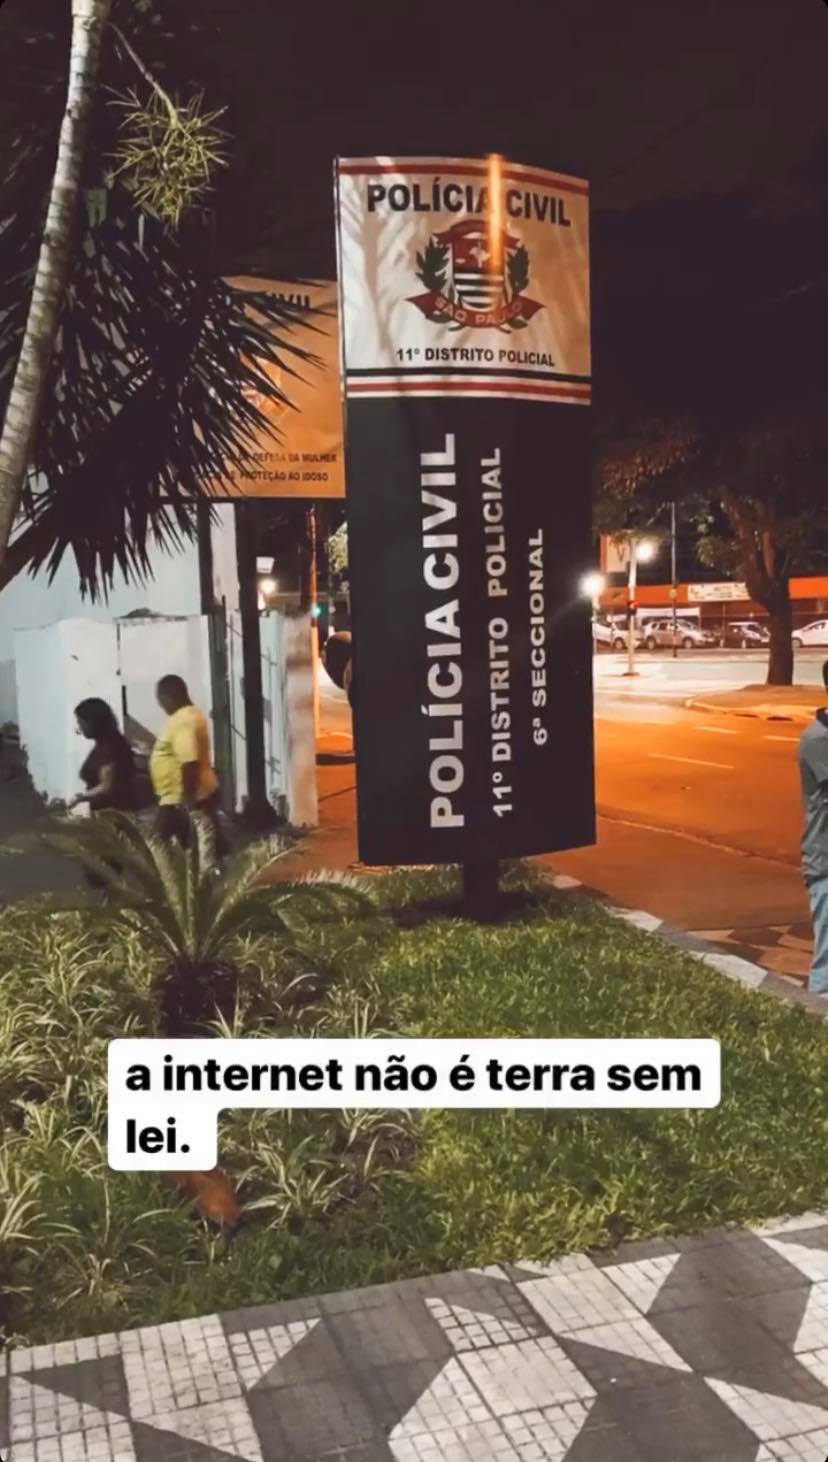 Tati Dias em seu Instagram